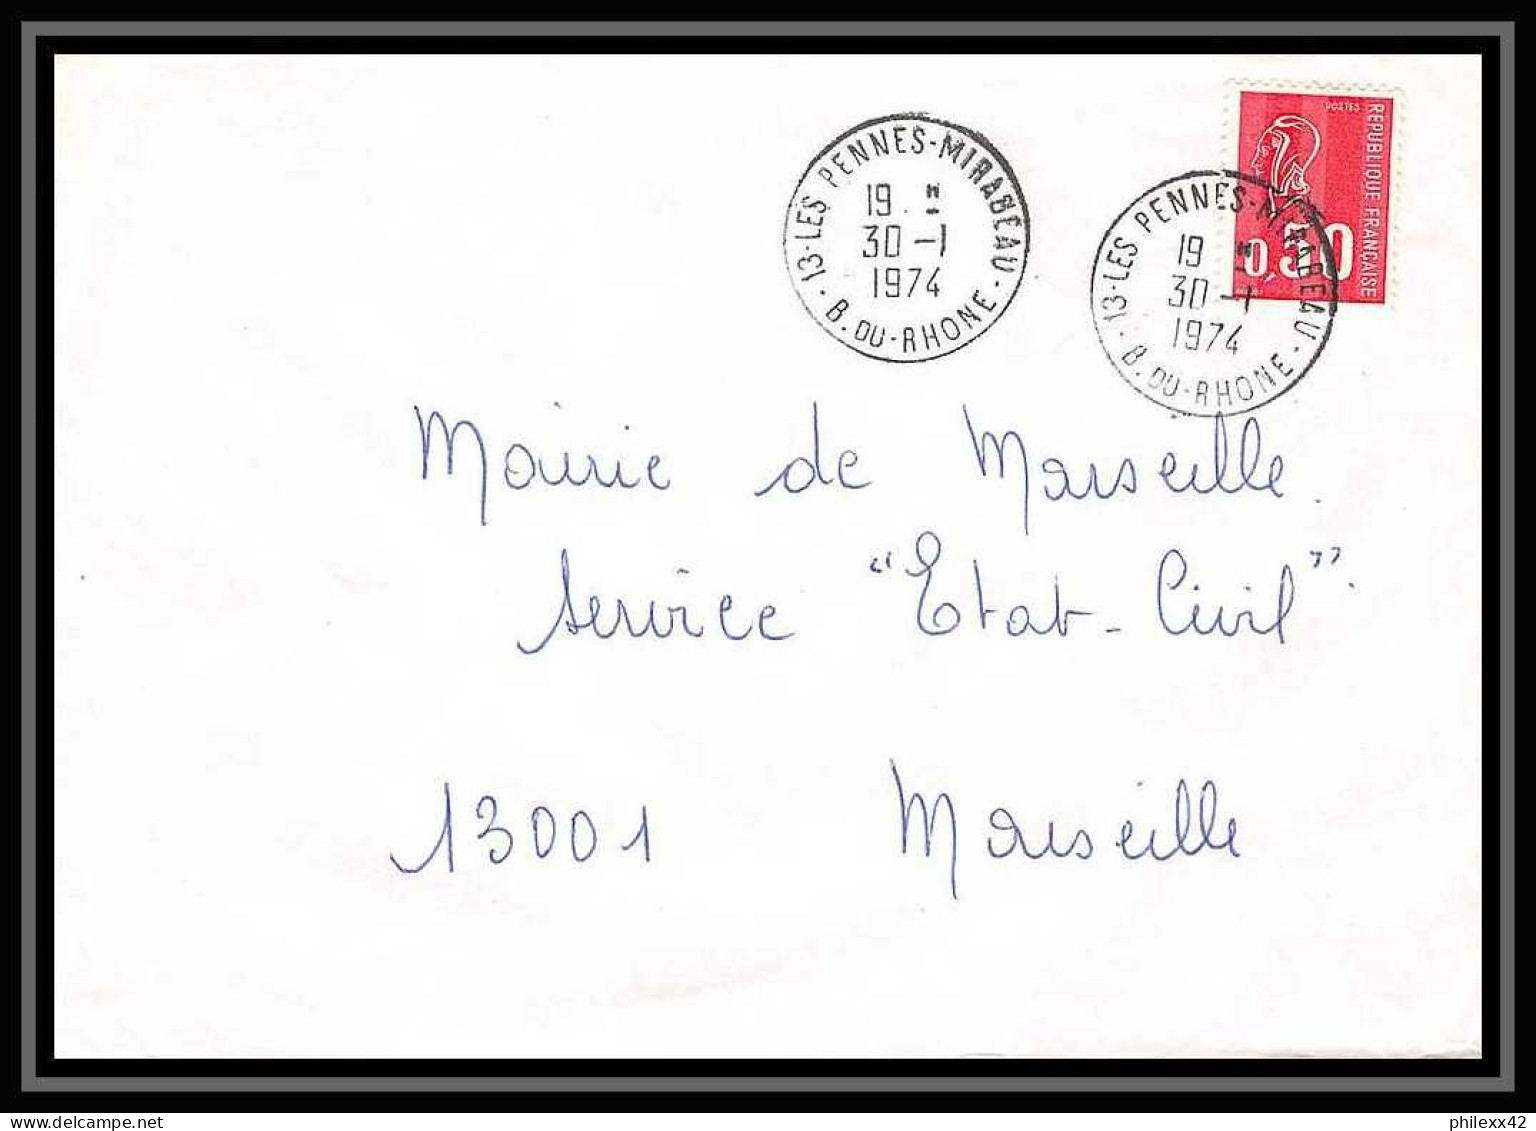 114298 Lot De 10 Lettres + Divers Cover Bouches Du Rhone Les Pennes-Mirabeau - Collections